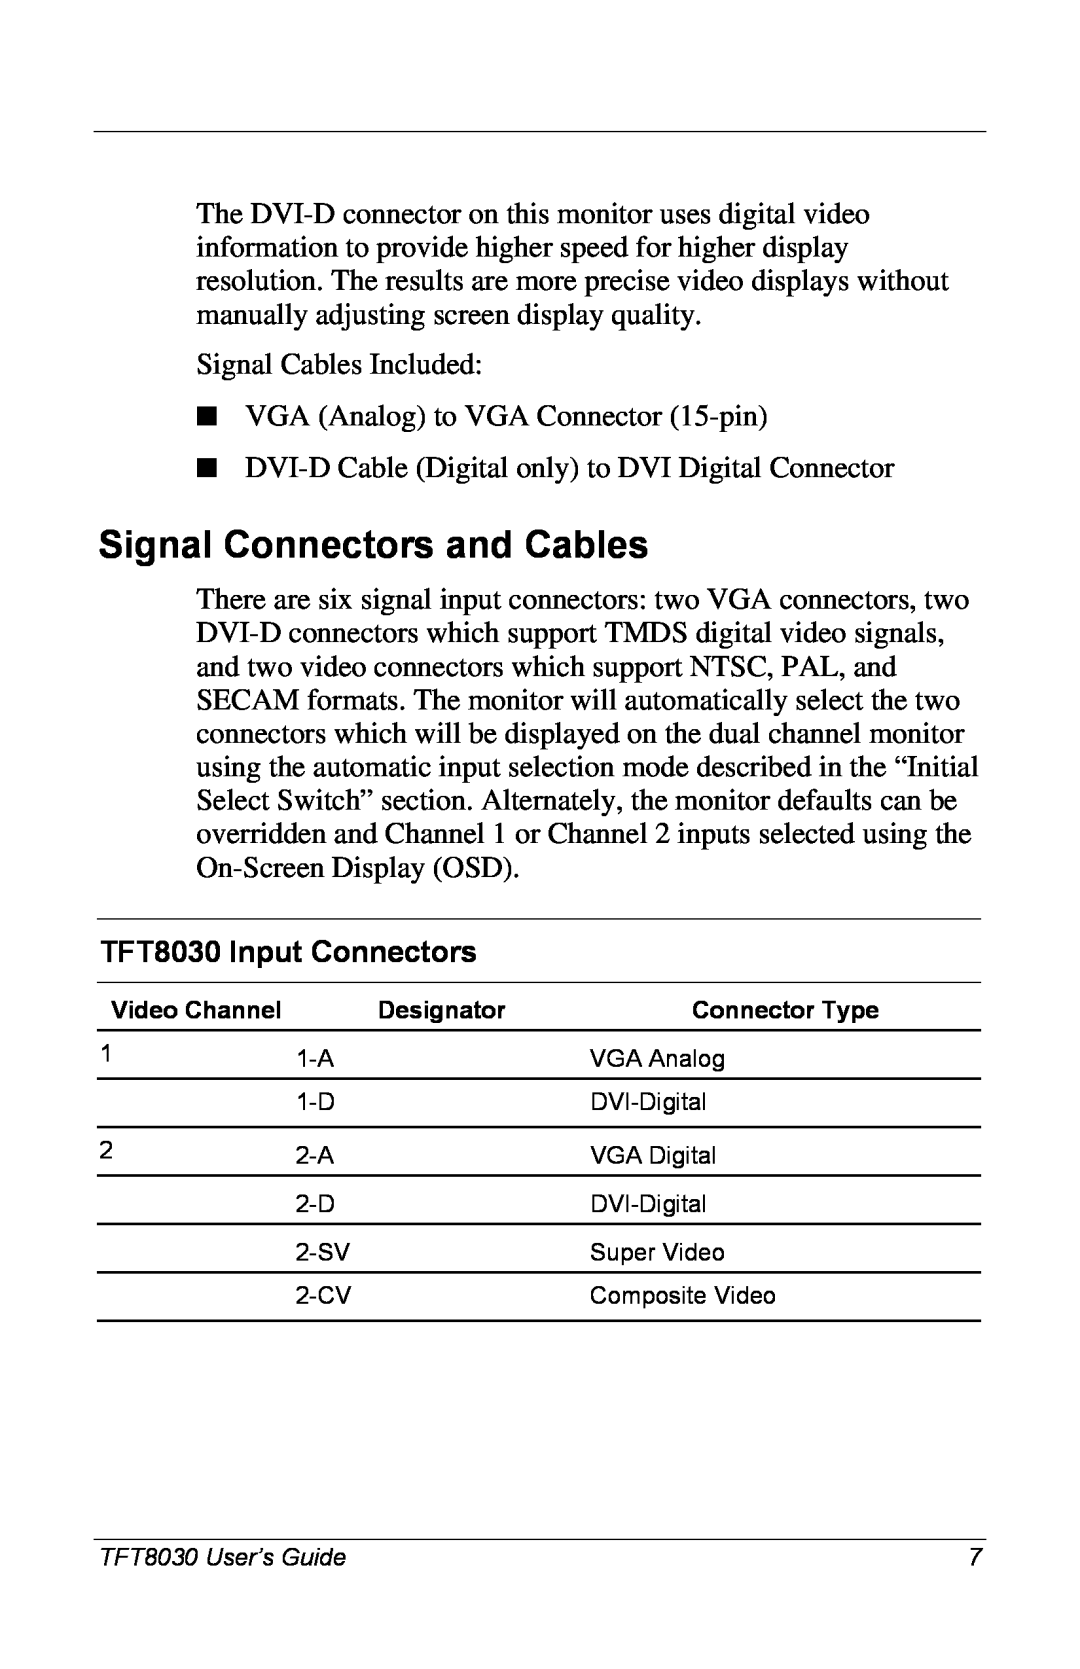 Compaq manual Signal Connectors and Cables, TFT8030 Input Connectors 